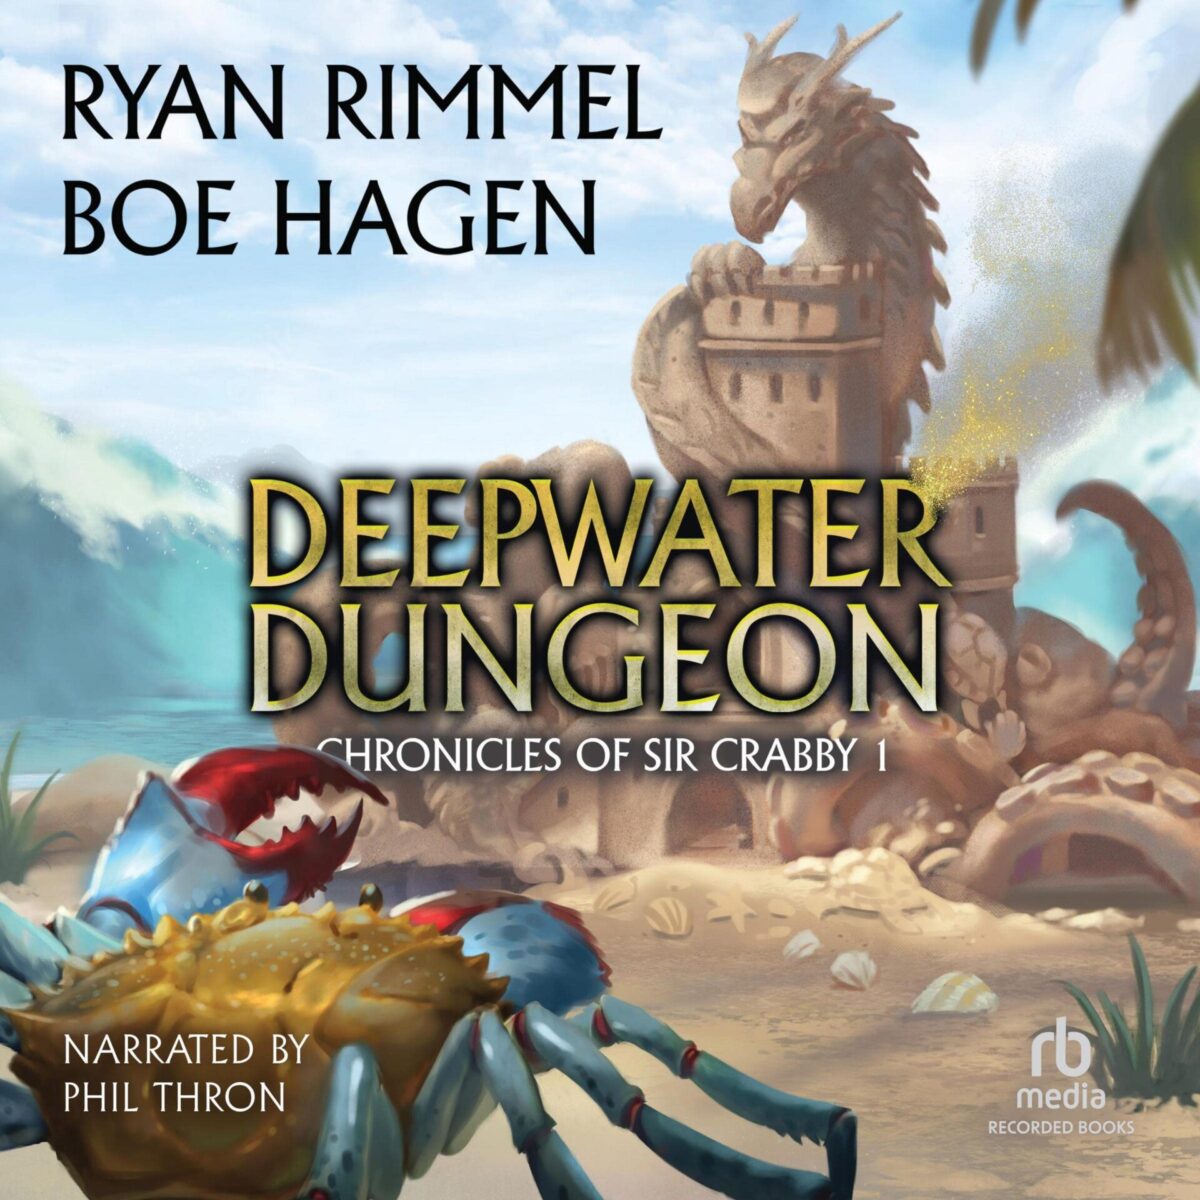 Deepwater Dungeon